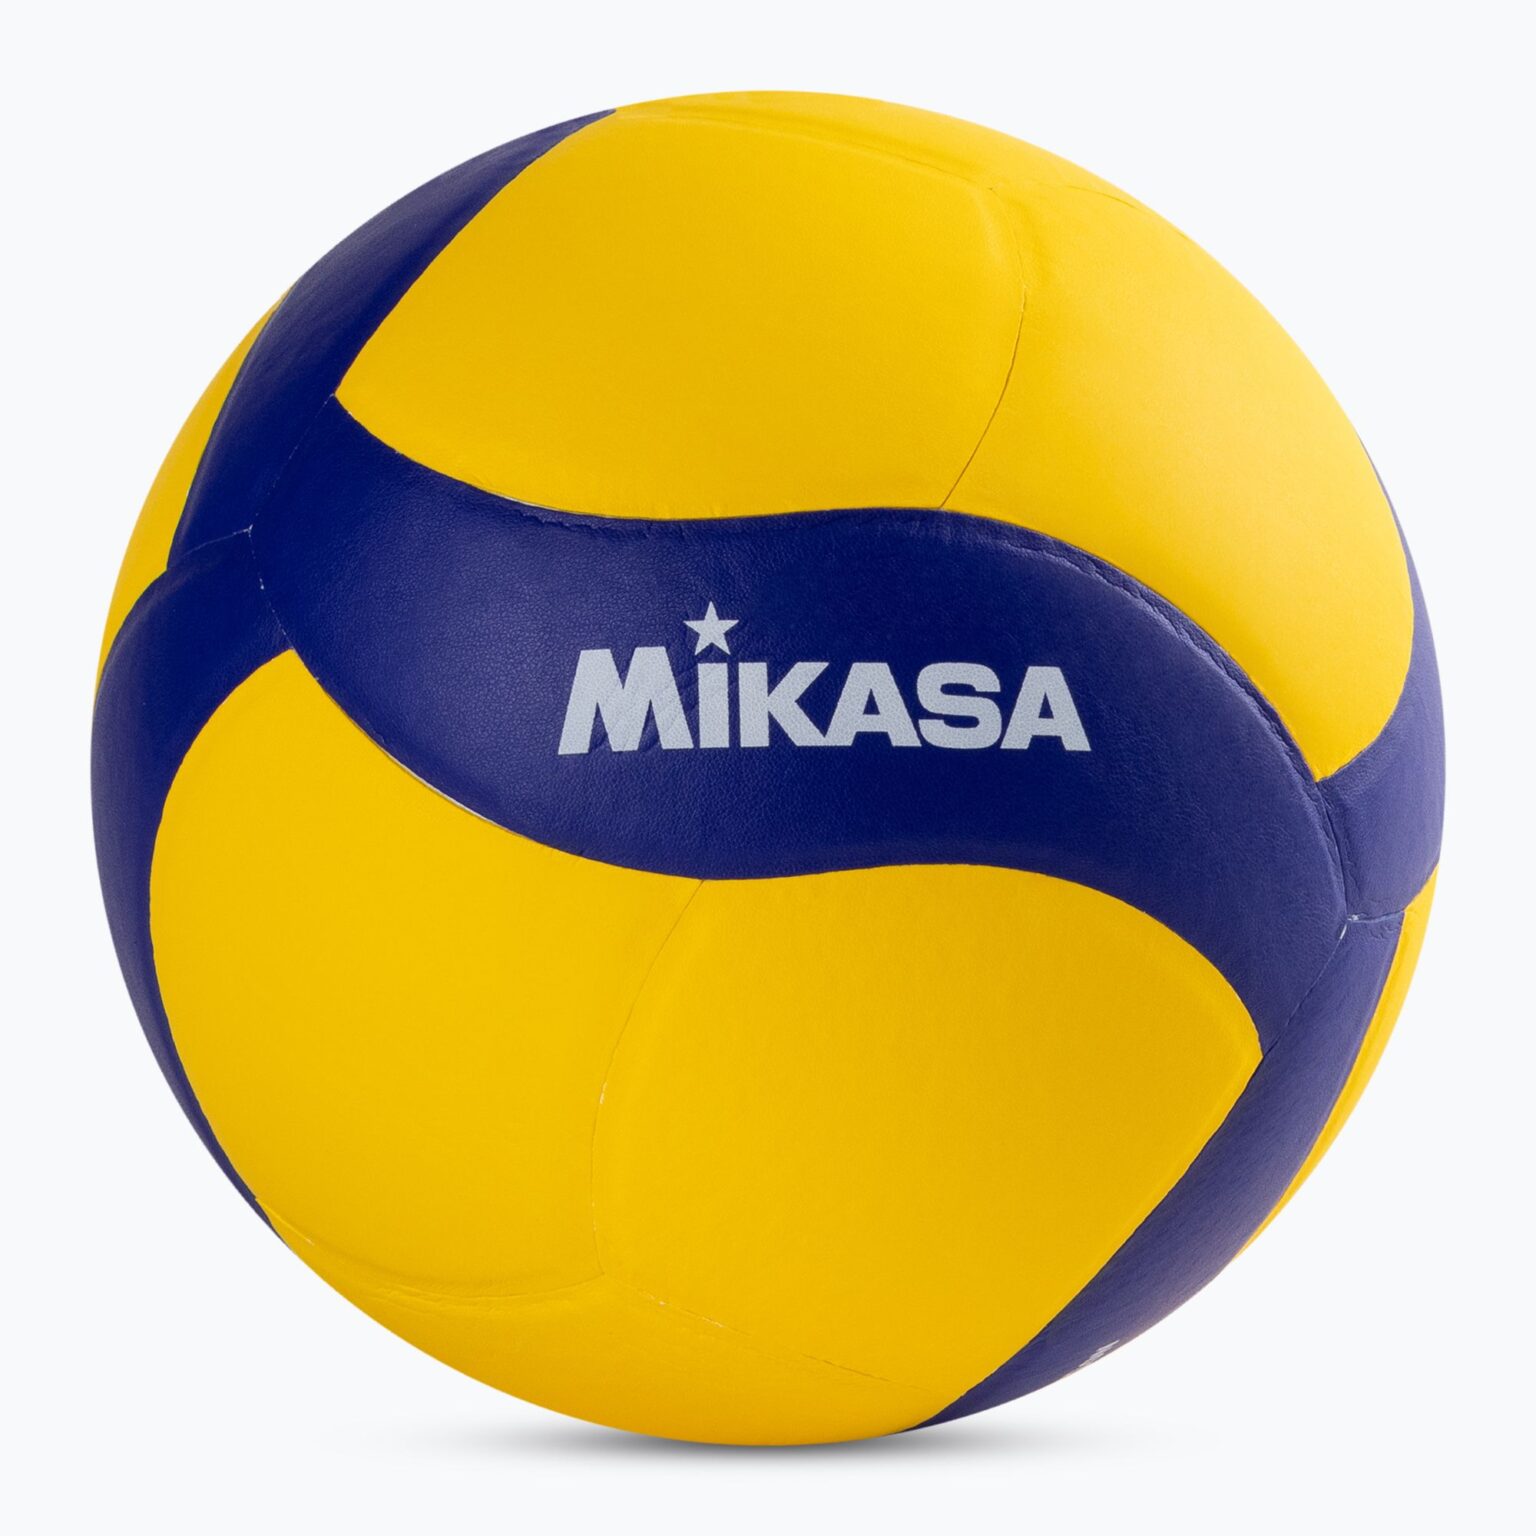 Piłka do siatkówki Mikasa V330W yellow/blue rozmiar 5